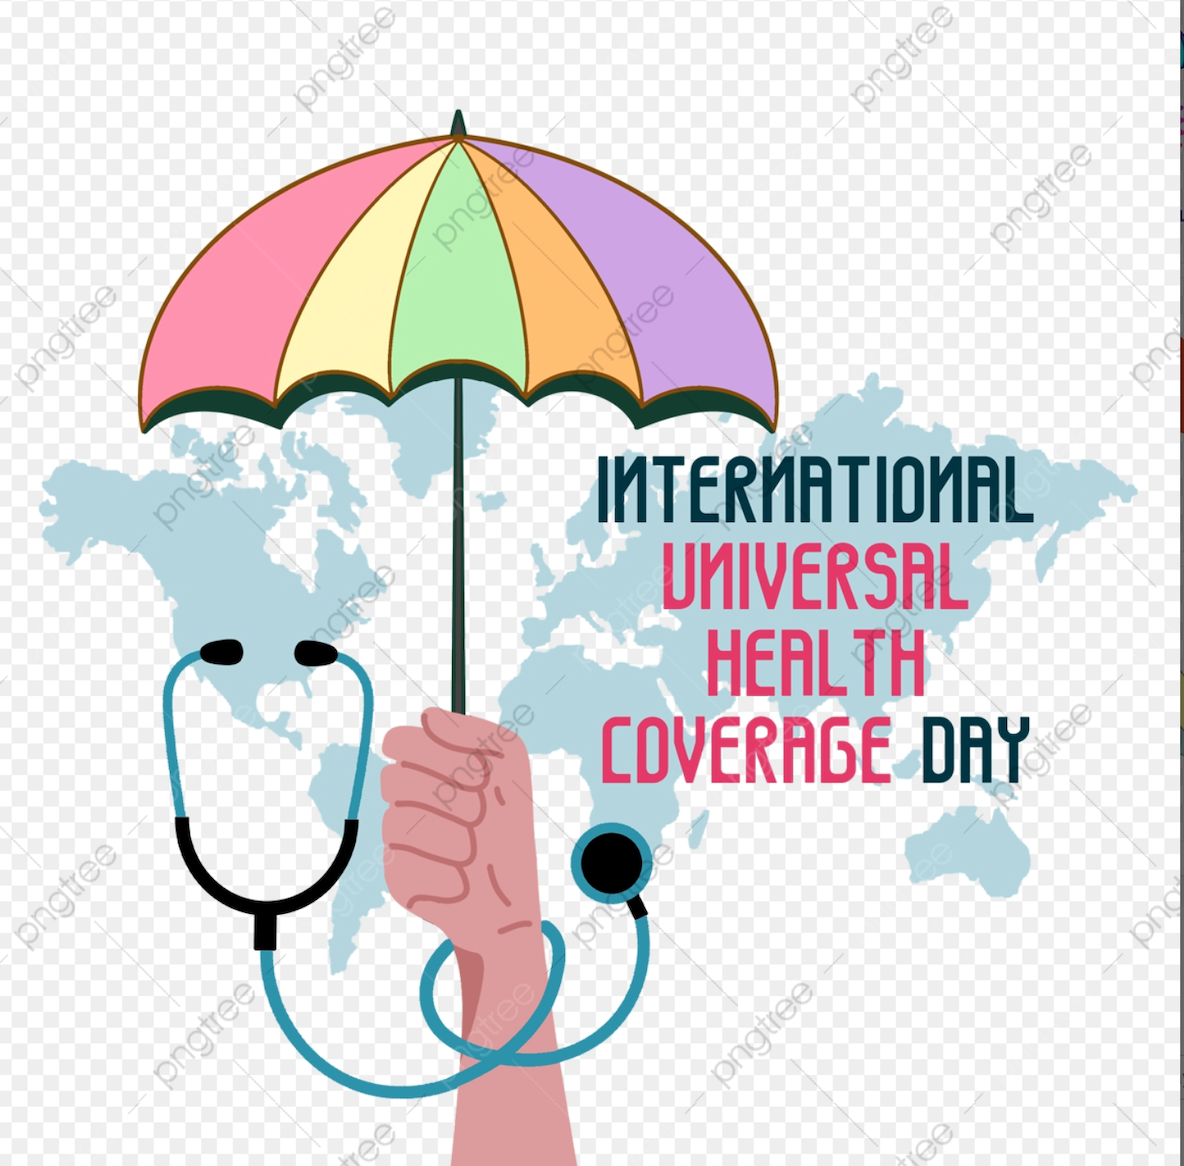 Somalia celebra el Día de la Cobertura Sanitaria Universal: hacer realidad el sueño de “salud para todos